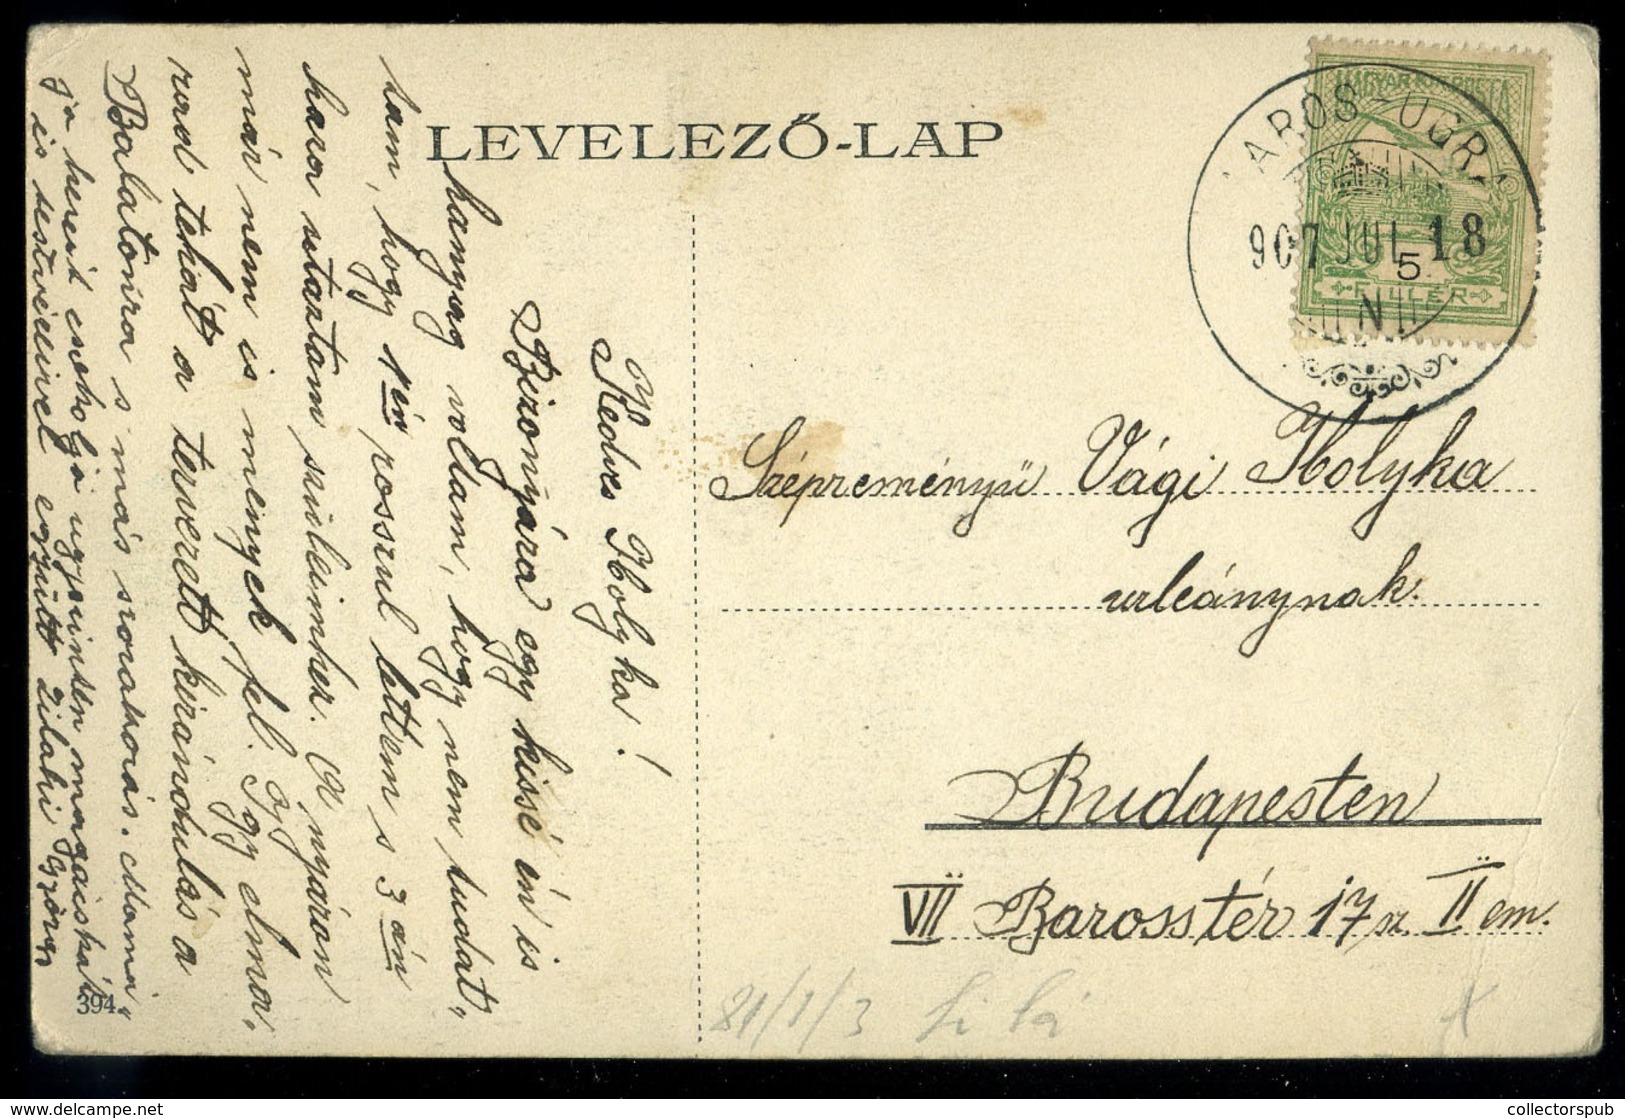 BUDAPEST 1907. Postatakarékpénztár épület Régi Képeslap - Hungary